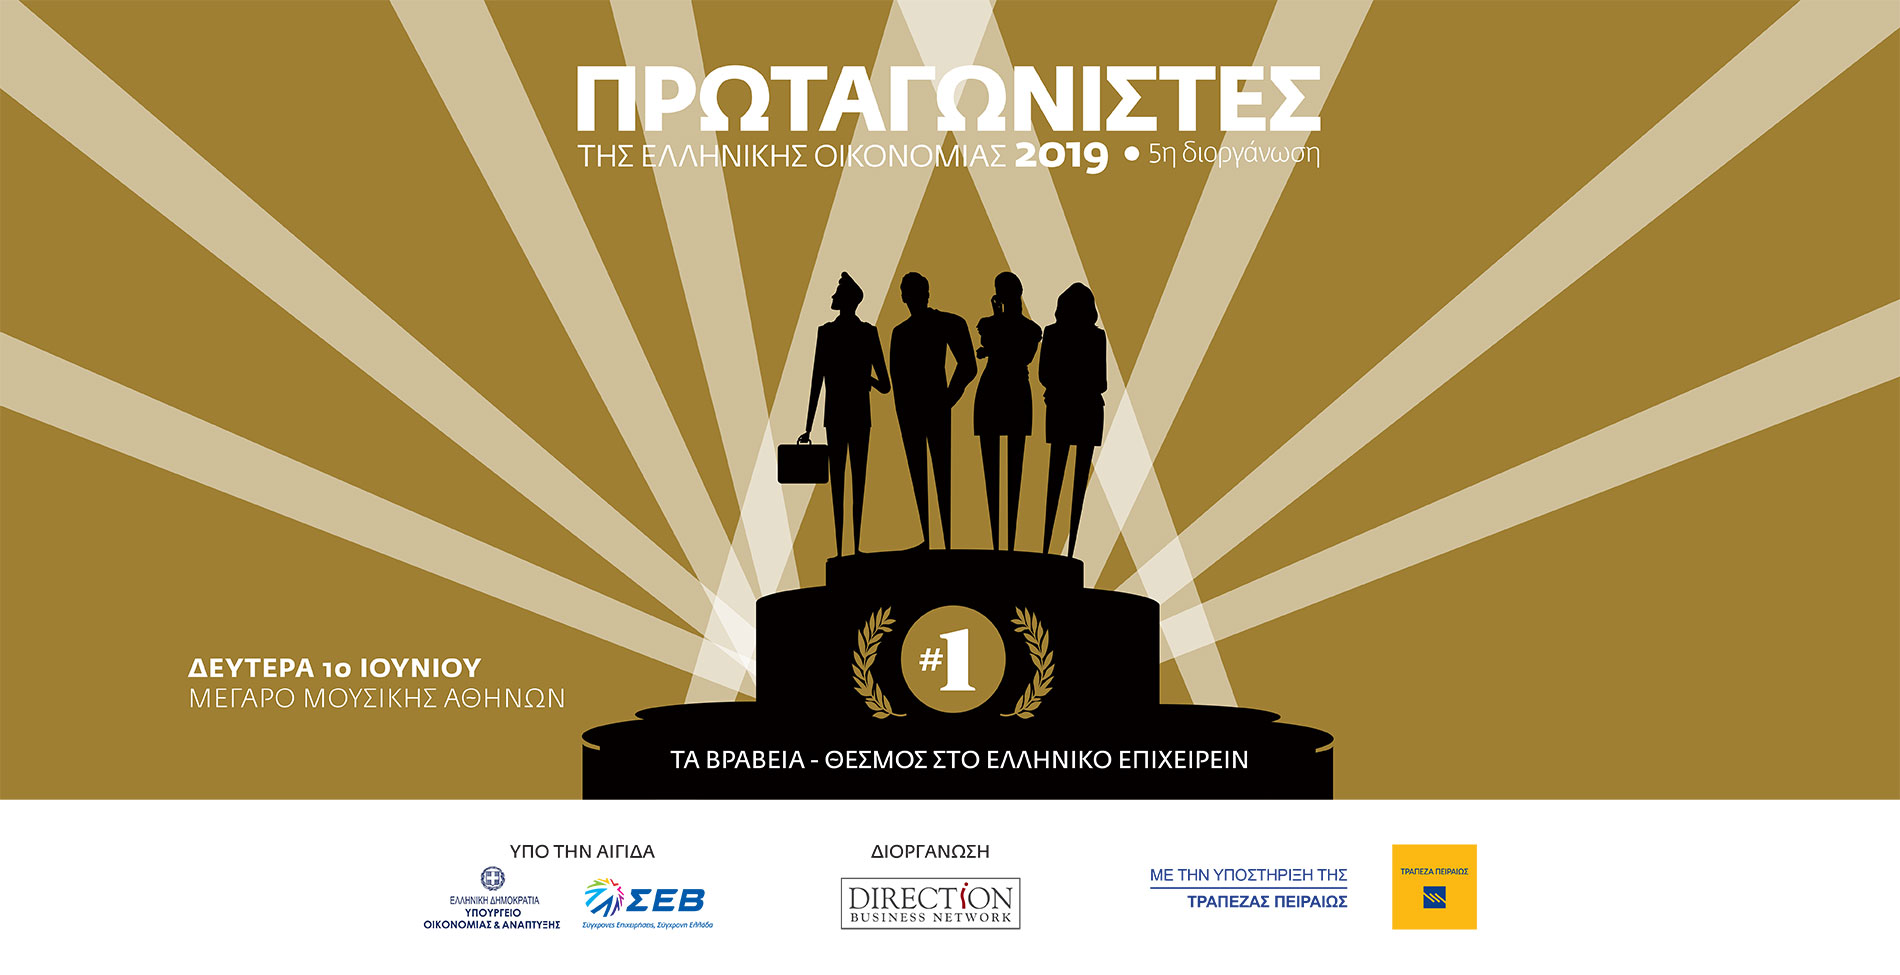 Πρωταγωνιστές της Ελληνικής Οικονομίας 2019 - Animation video